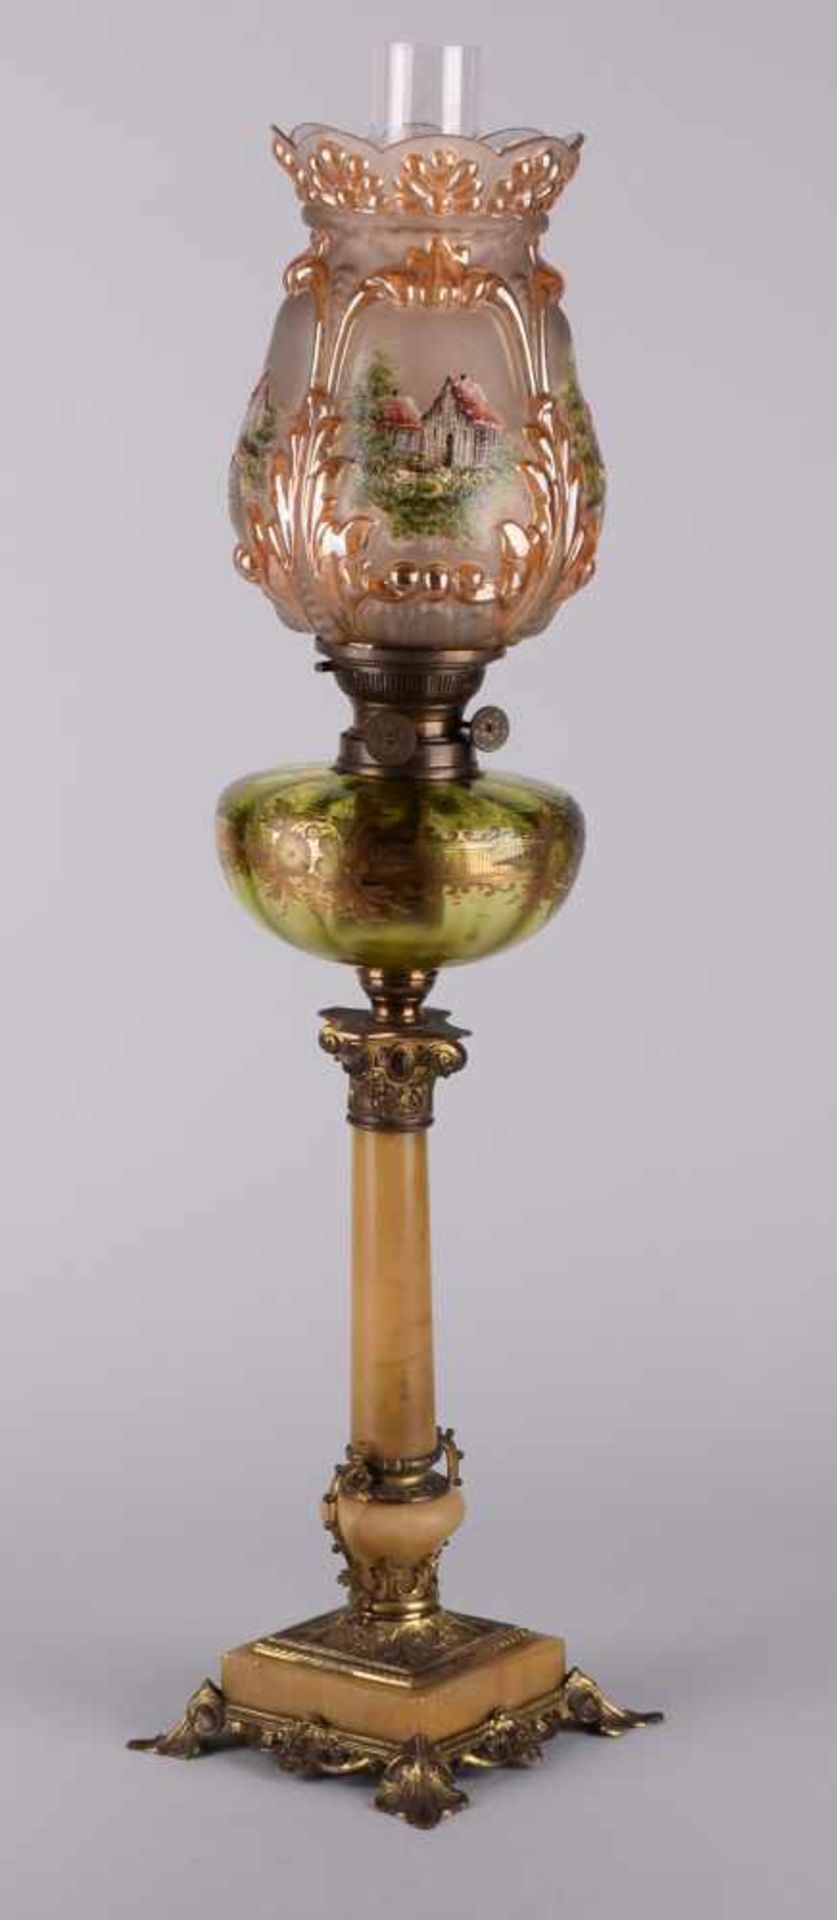 Große Salonpetroleumlampe Fuß und schlanker hoher Schaft aus vergoldetem Metall und grünlichem Stein - Bild 3 aus 3